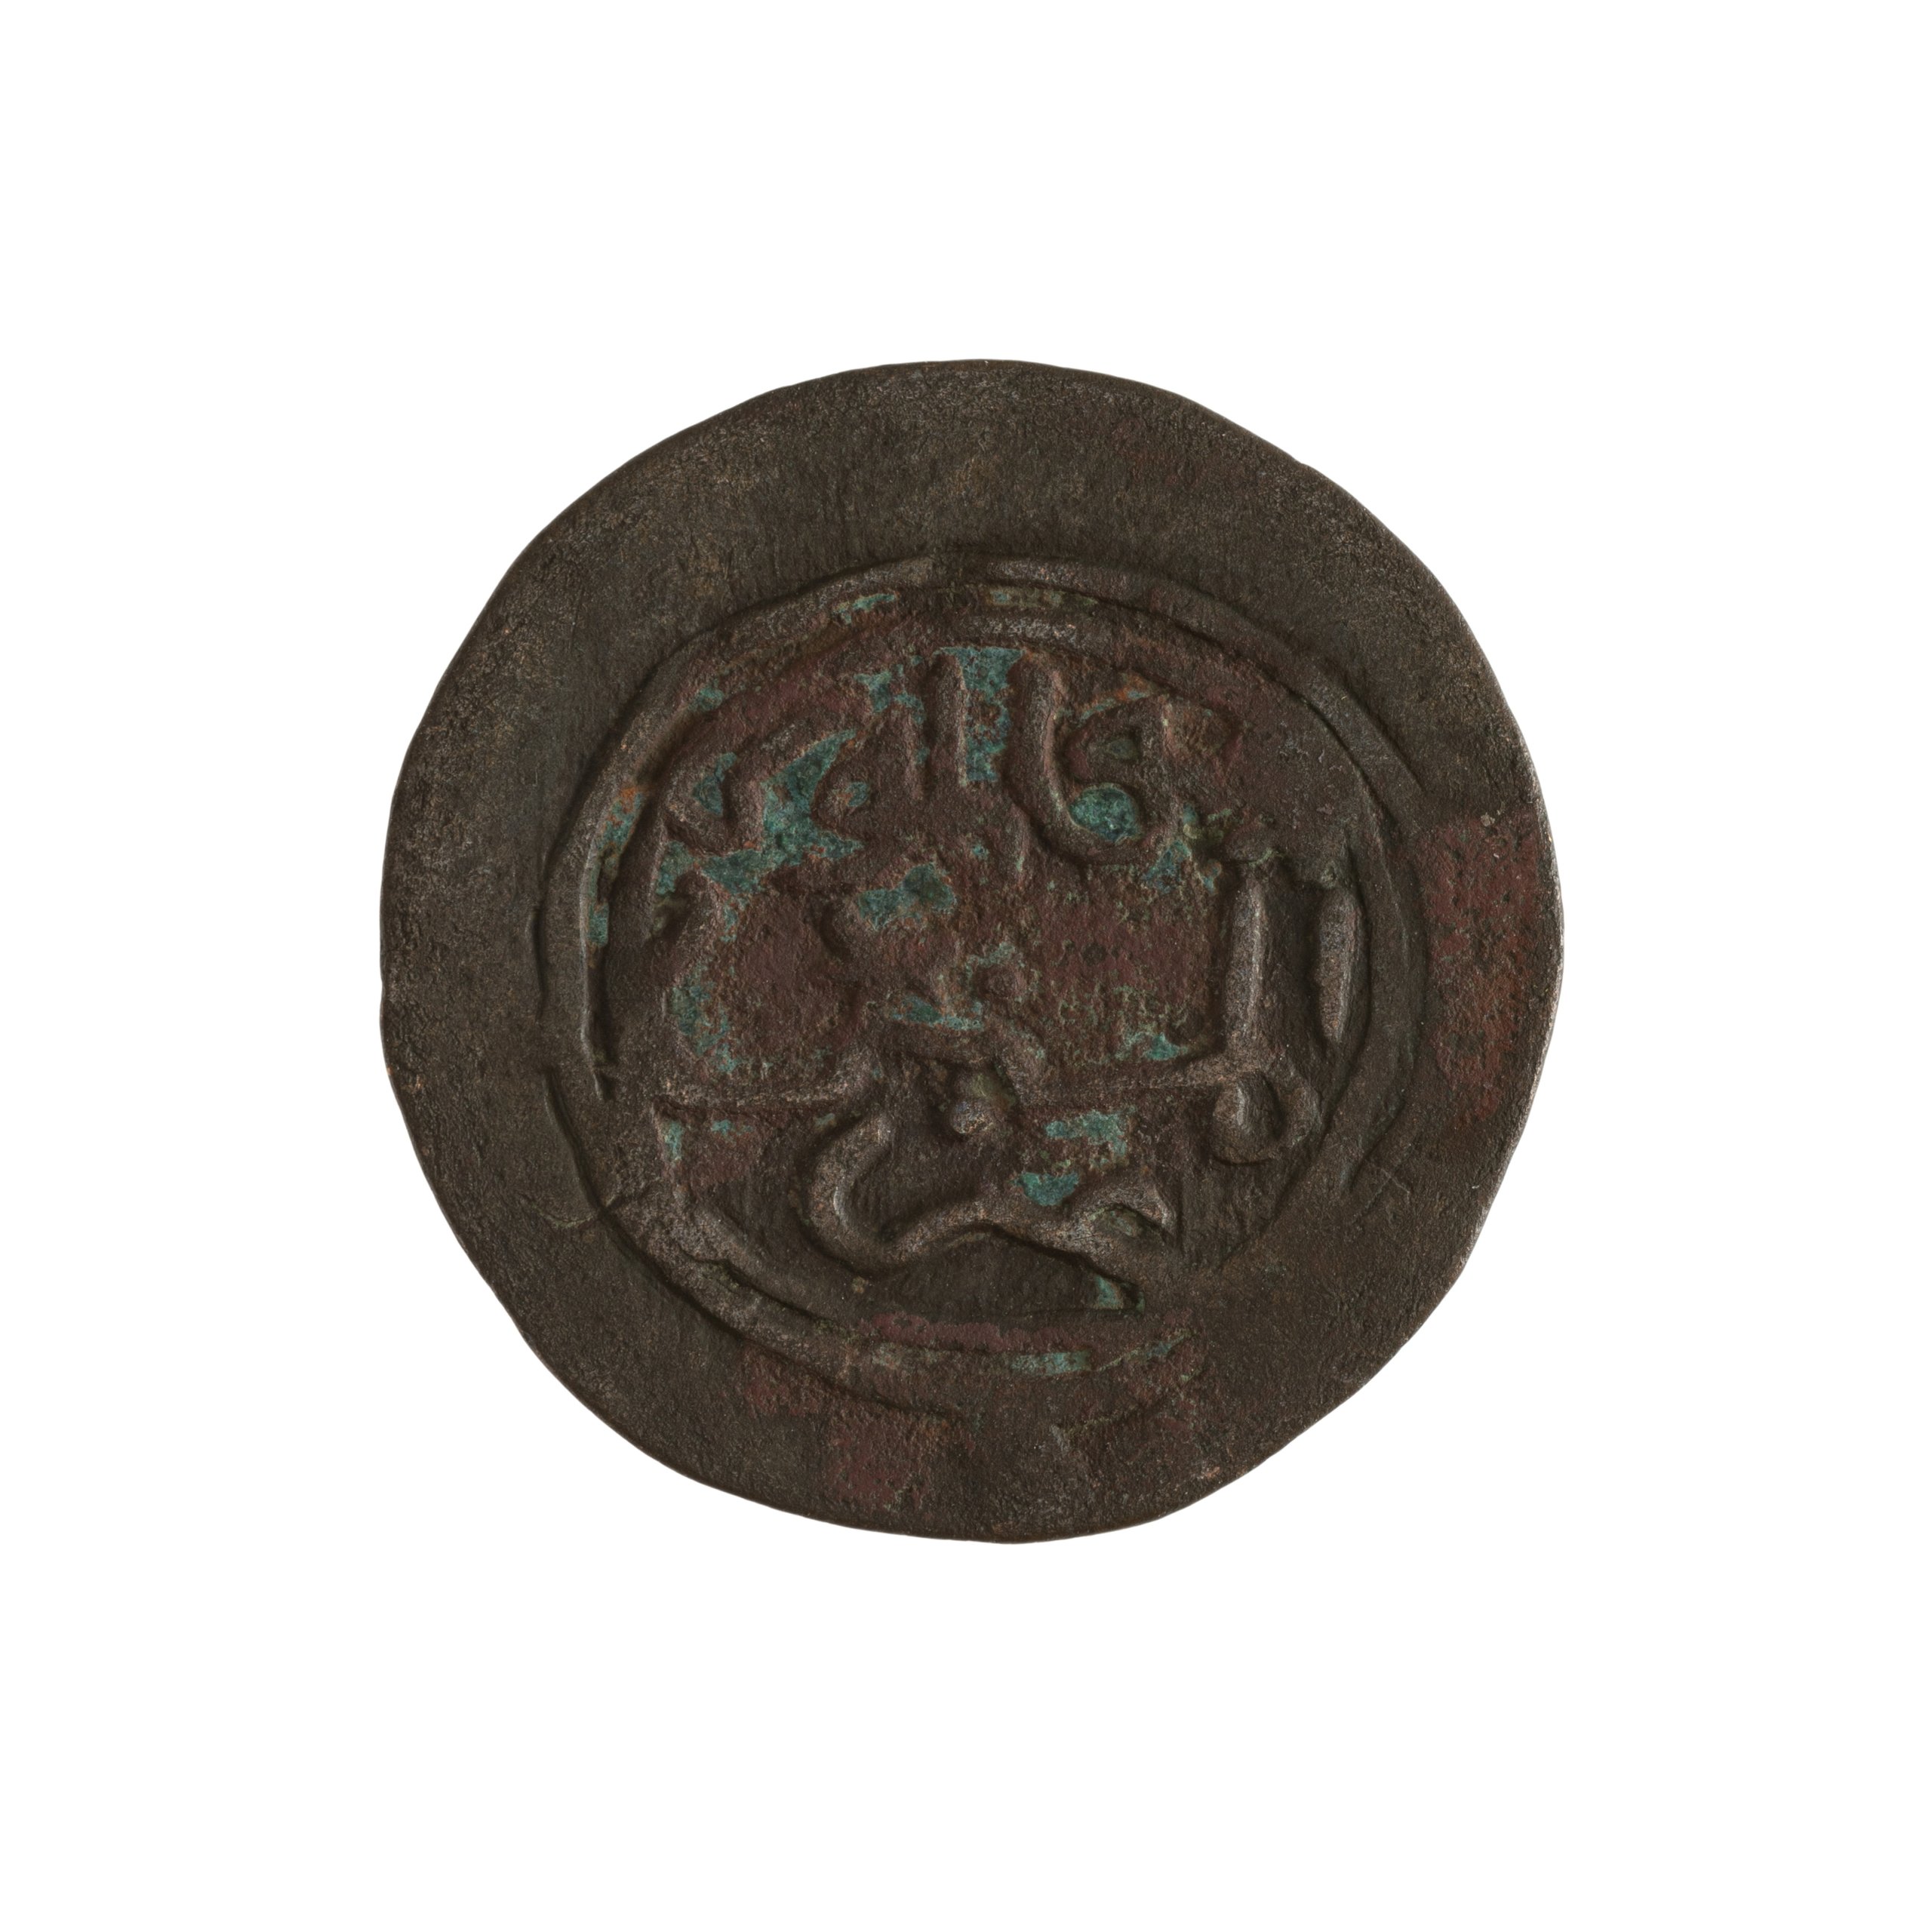 Kilwa Sultanate Falus coin